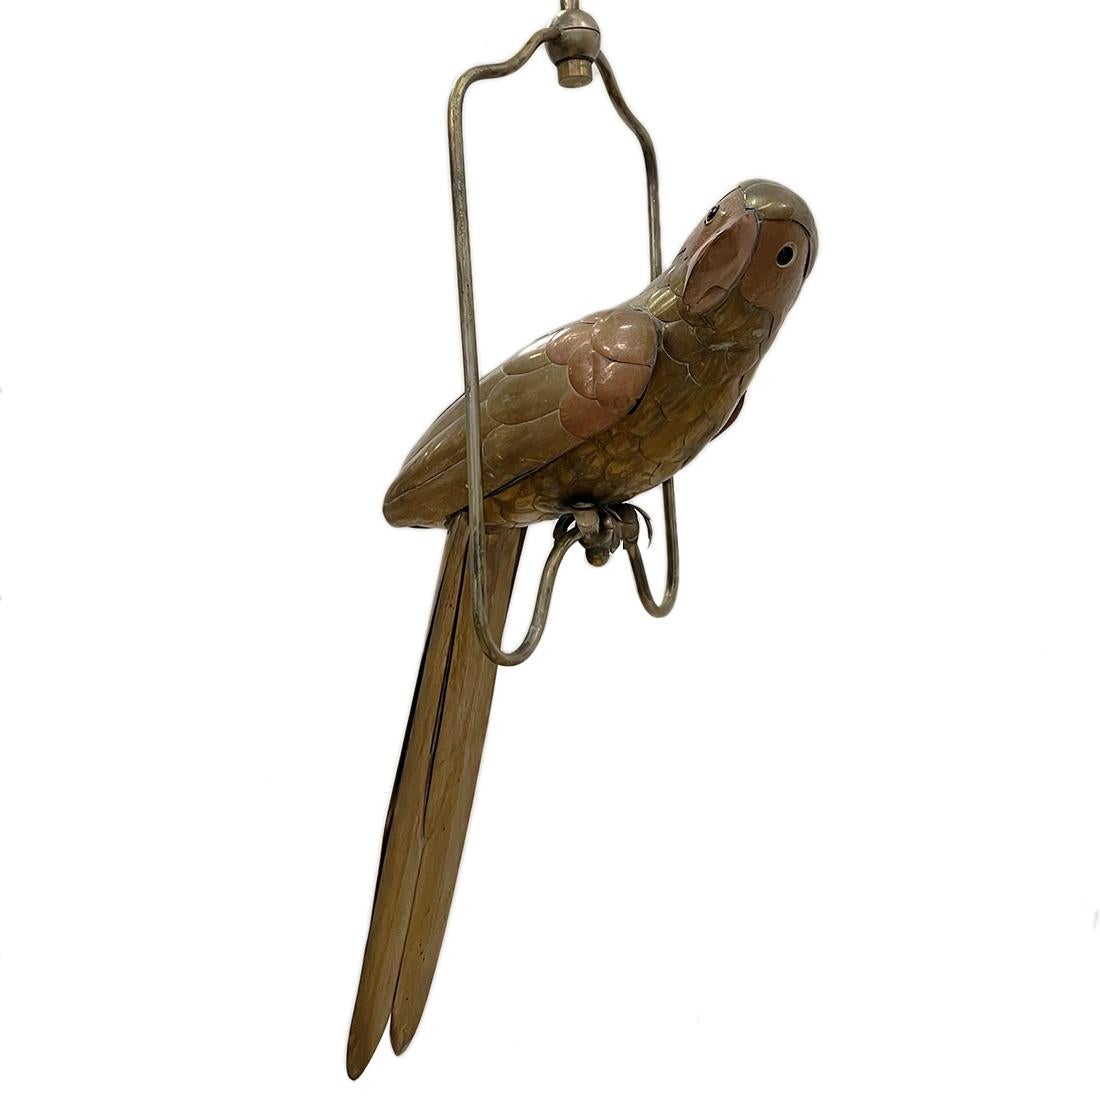 Oiseau en laiton repoussé sur pied, datant des années 1960.

Mesures :
Hauteur : 20
Largeur : 12 pouces
Profondeur : 12